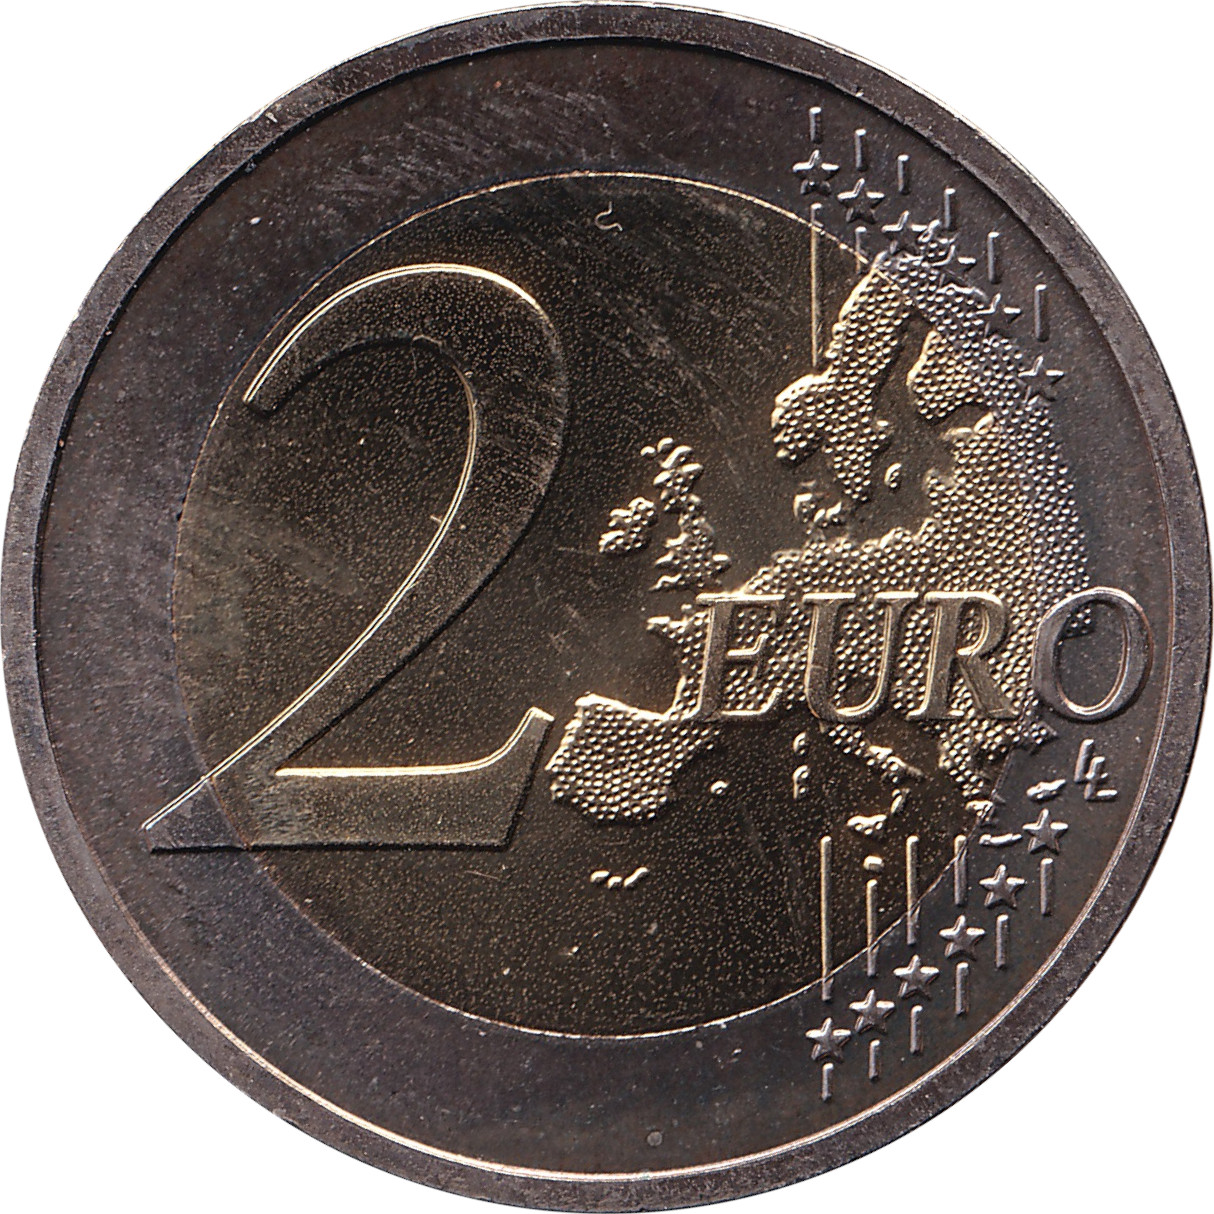 2 euro - Hessen